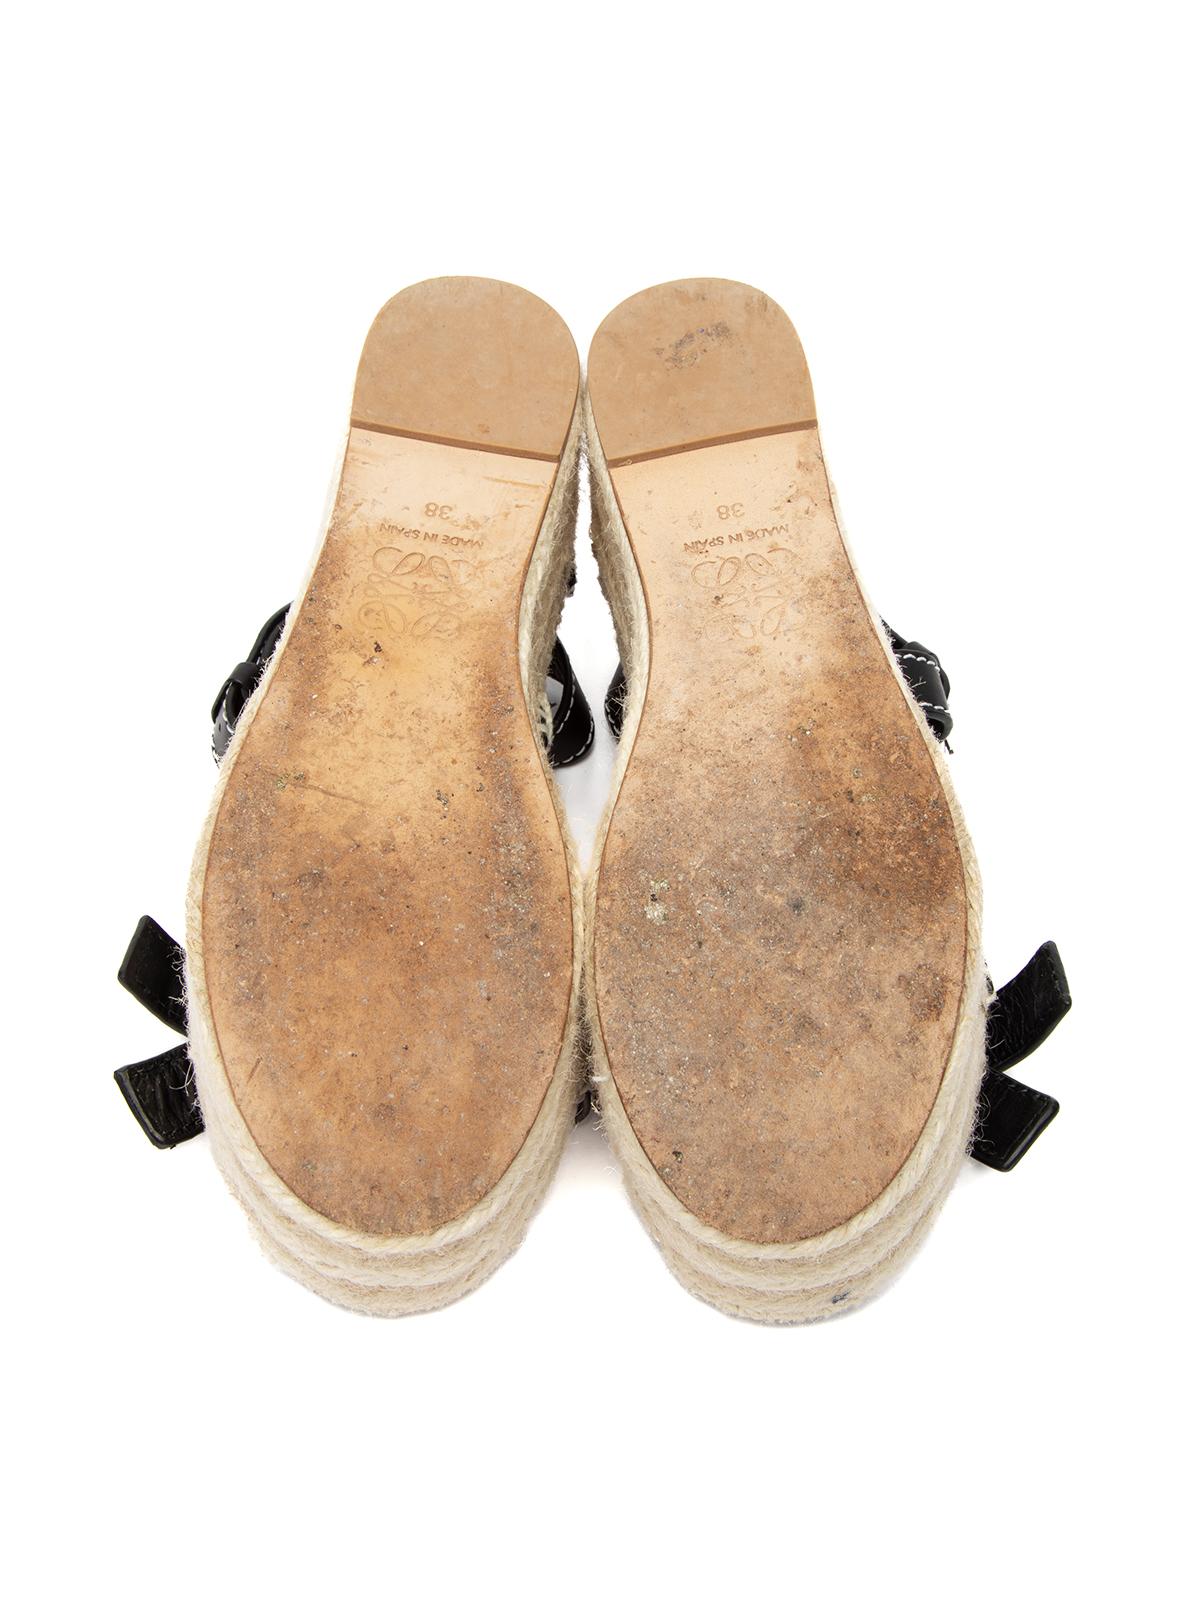 Loewe Women's Platform Espadrilles Sandals 2